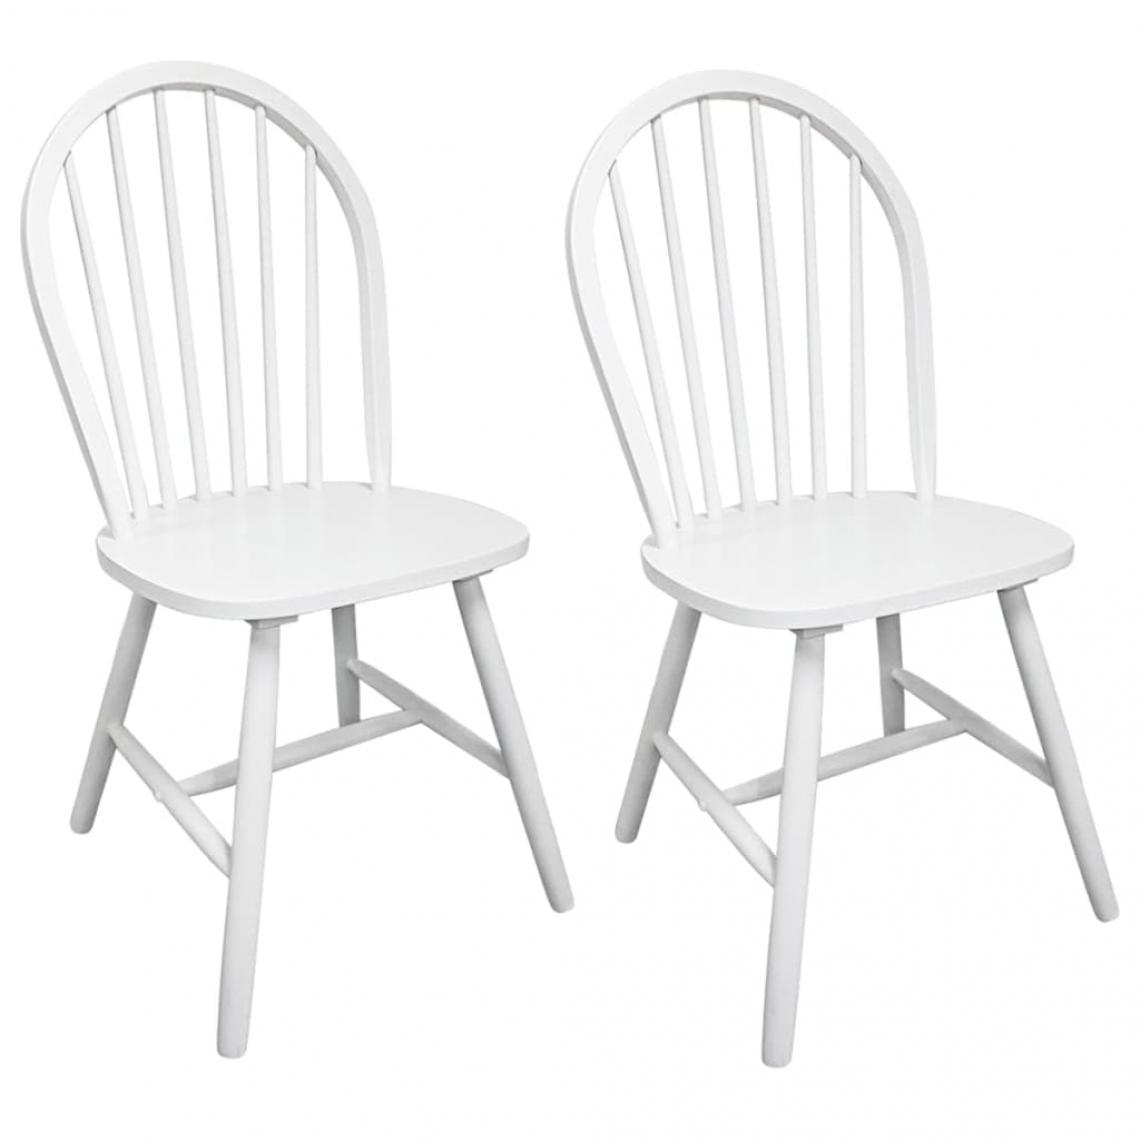 Decoshop26 - Lot de 2 chaises de salle à manger cuisine design classique bois d'hévéa solide blanc CDS020163 - Chaises